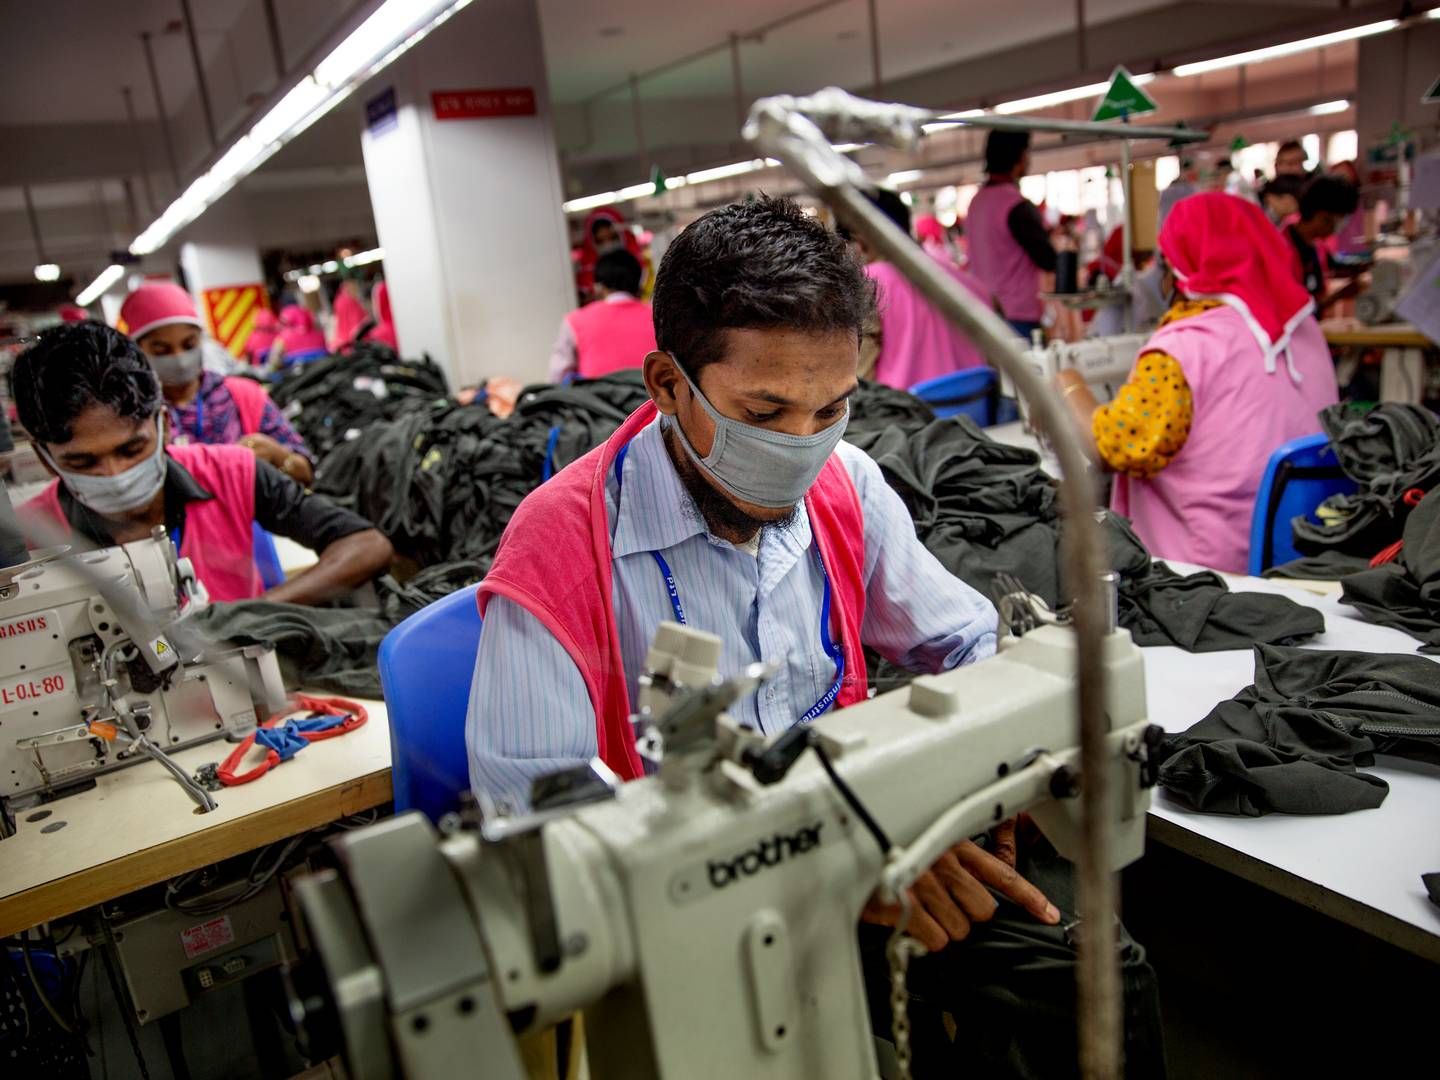 Tekstilleverandører til europæiske detailhandlere i Bangladesh svarer i en rundspørge, at betalingen for deres tøj efter corona fortsat ligger under deres produktionsomkostninger. Arkivfoto. | Foto: Jacob Ehrbahn